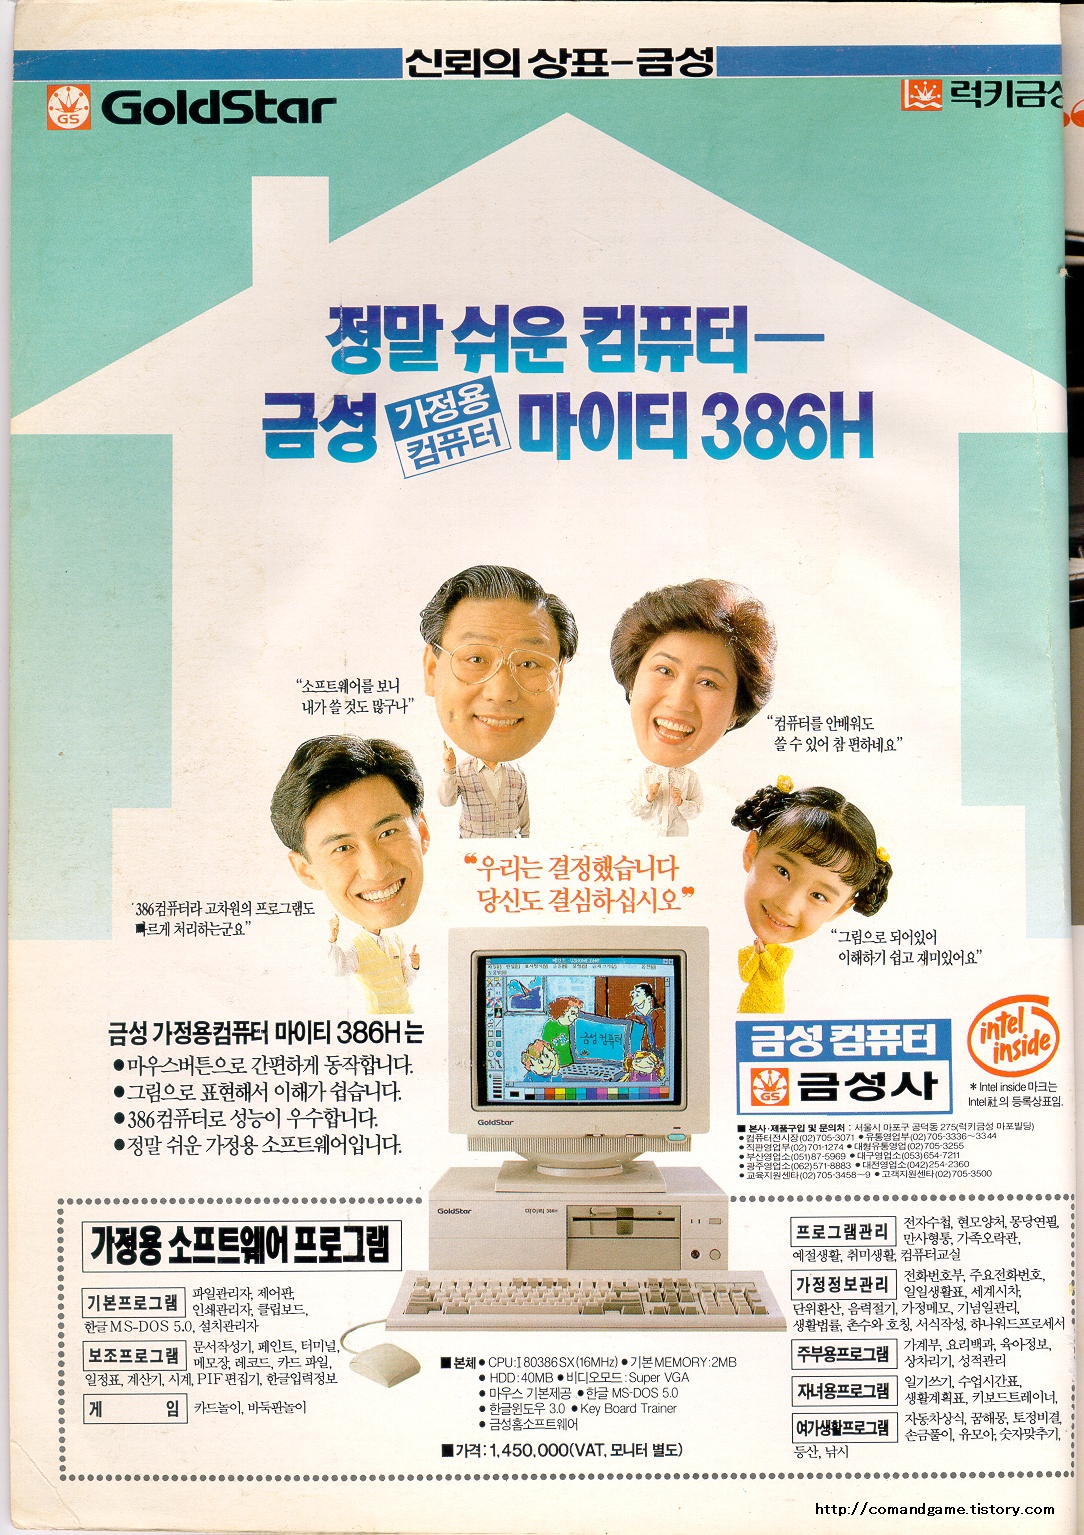 금성사 - 가정용컴퓨터 마이티386H 잡지 광고